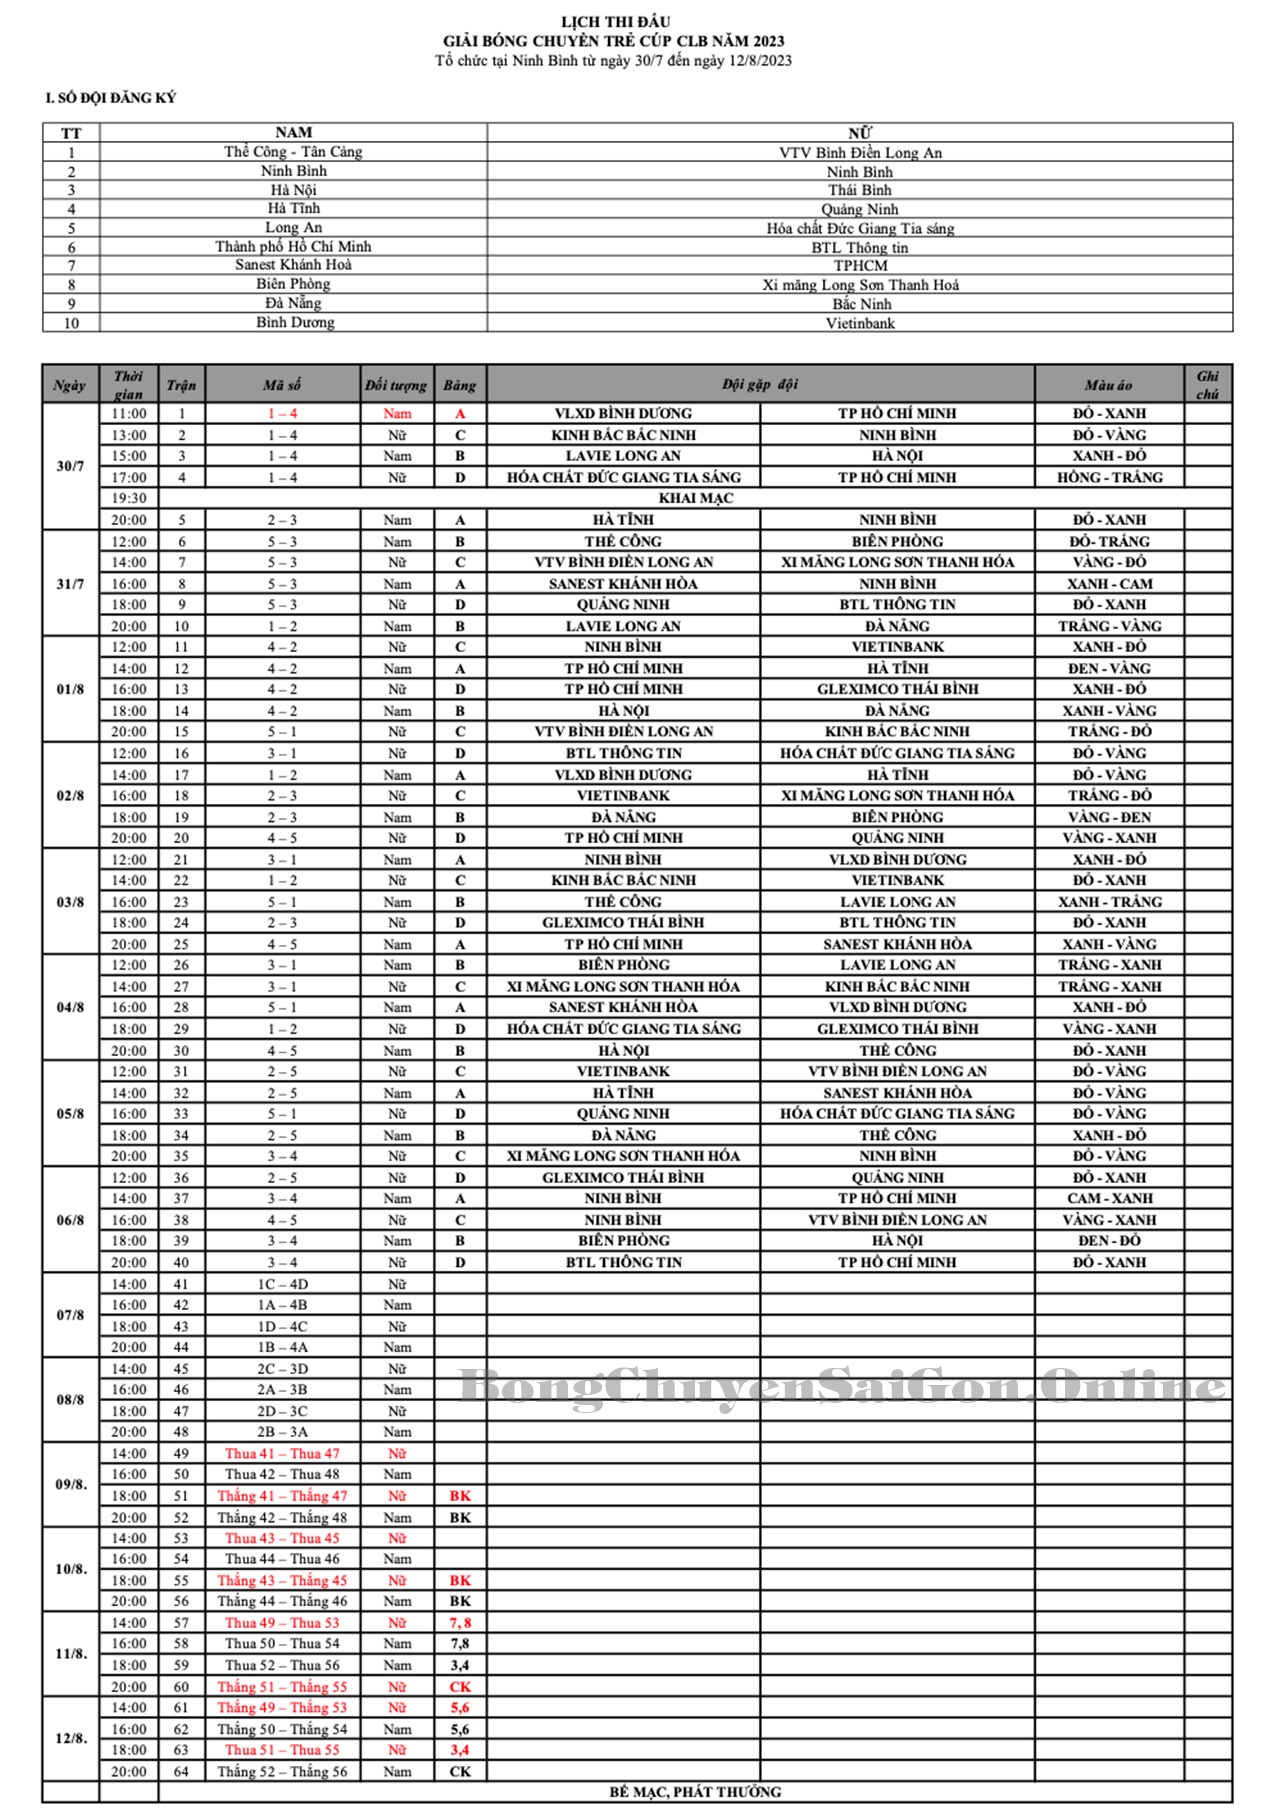 Lịch thi đấu giải bóng chuyền trẻ Cúp CLB 2023 mới nhất 309313